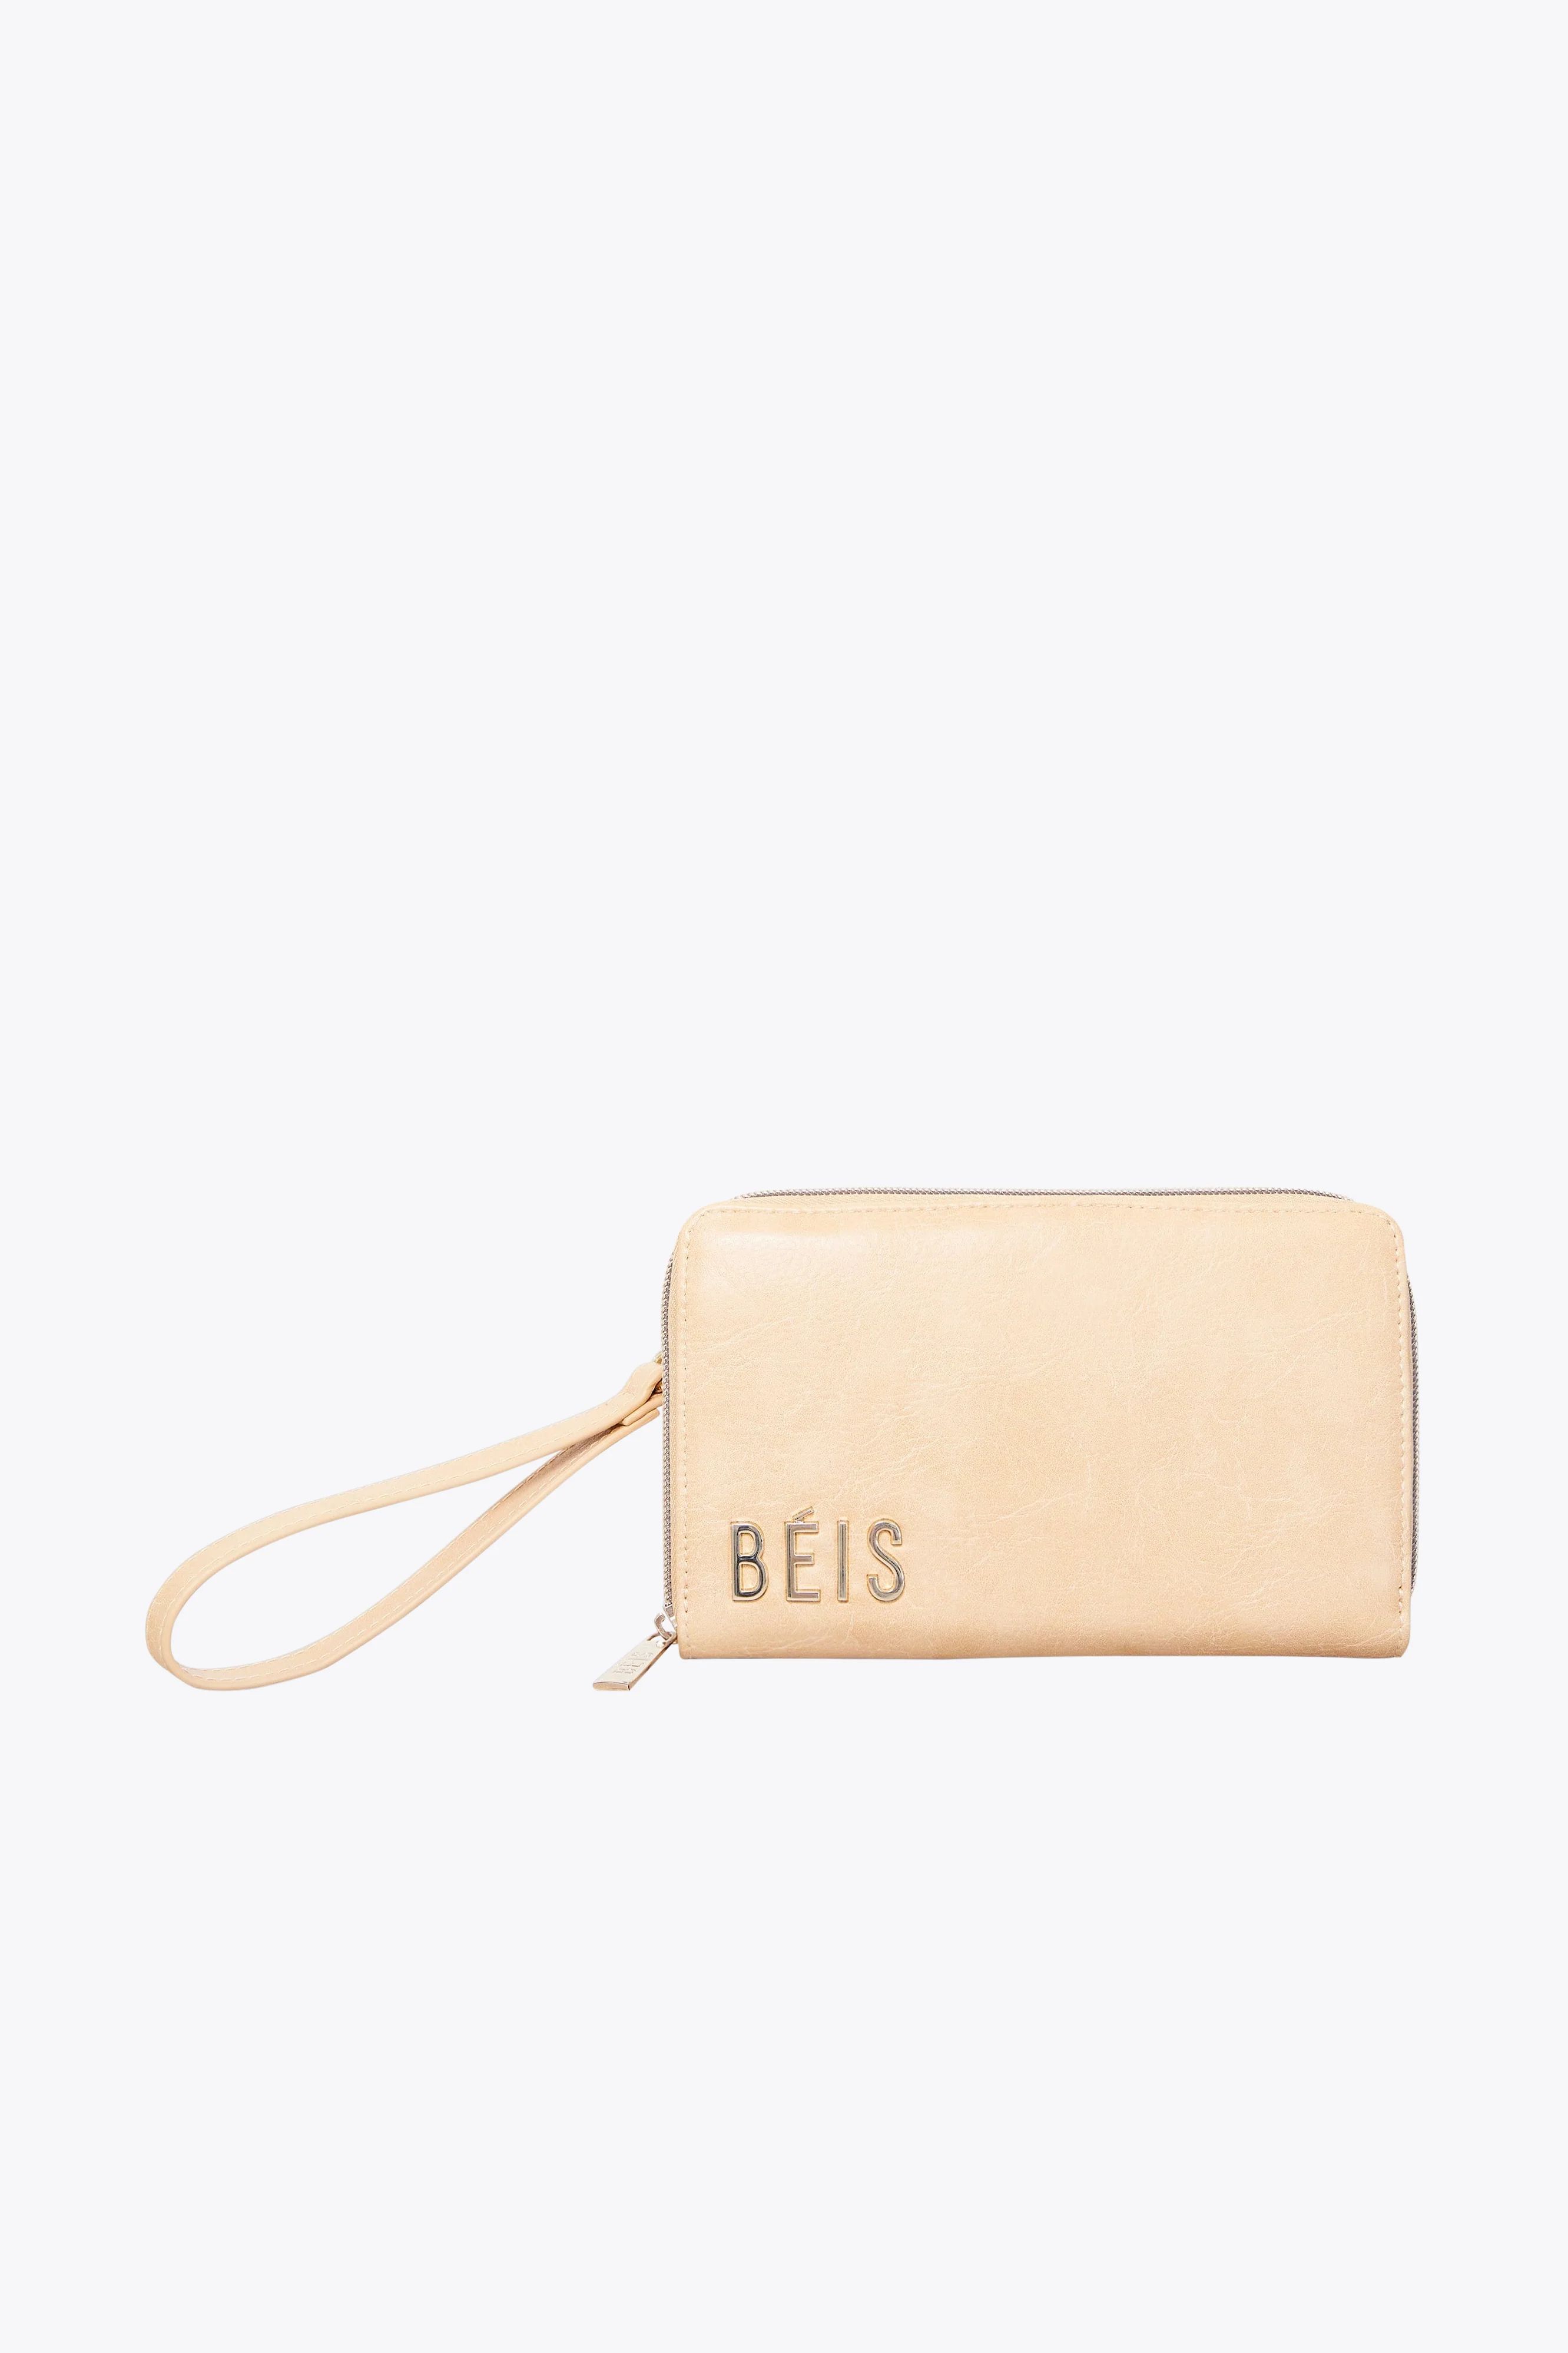 The Travel Wallet in Beige | BÉIS Travel